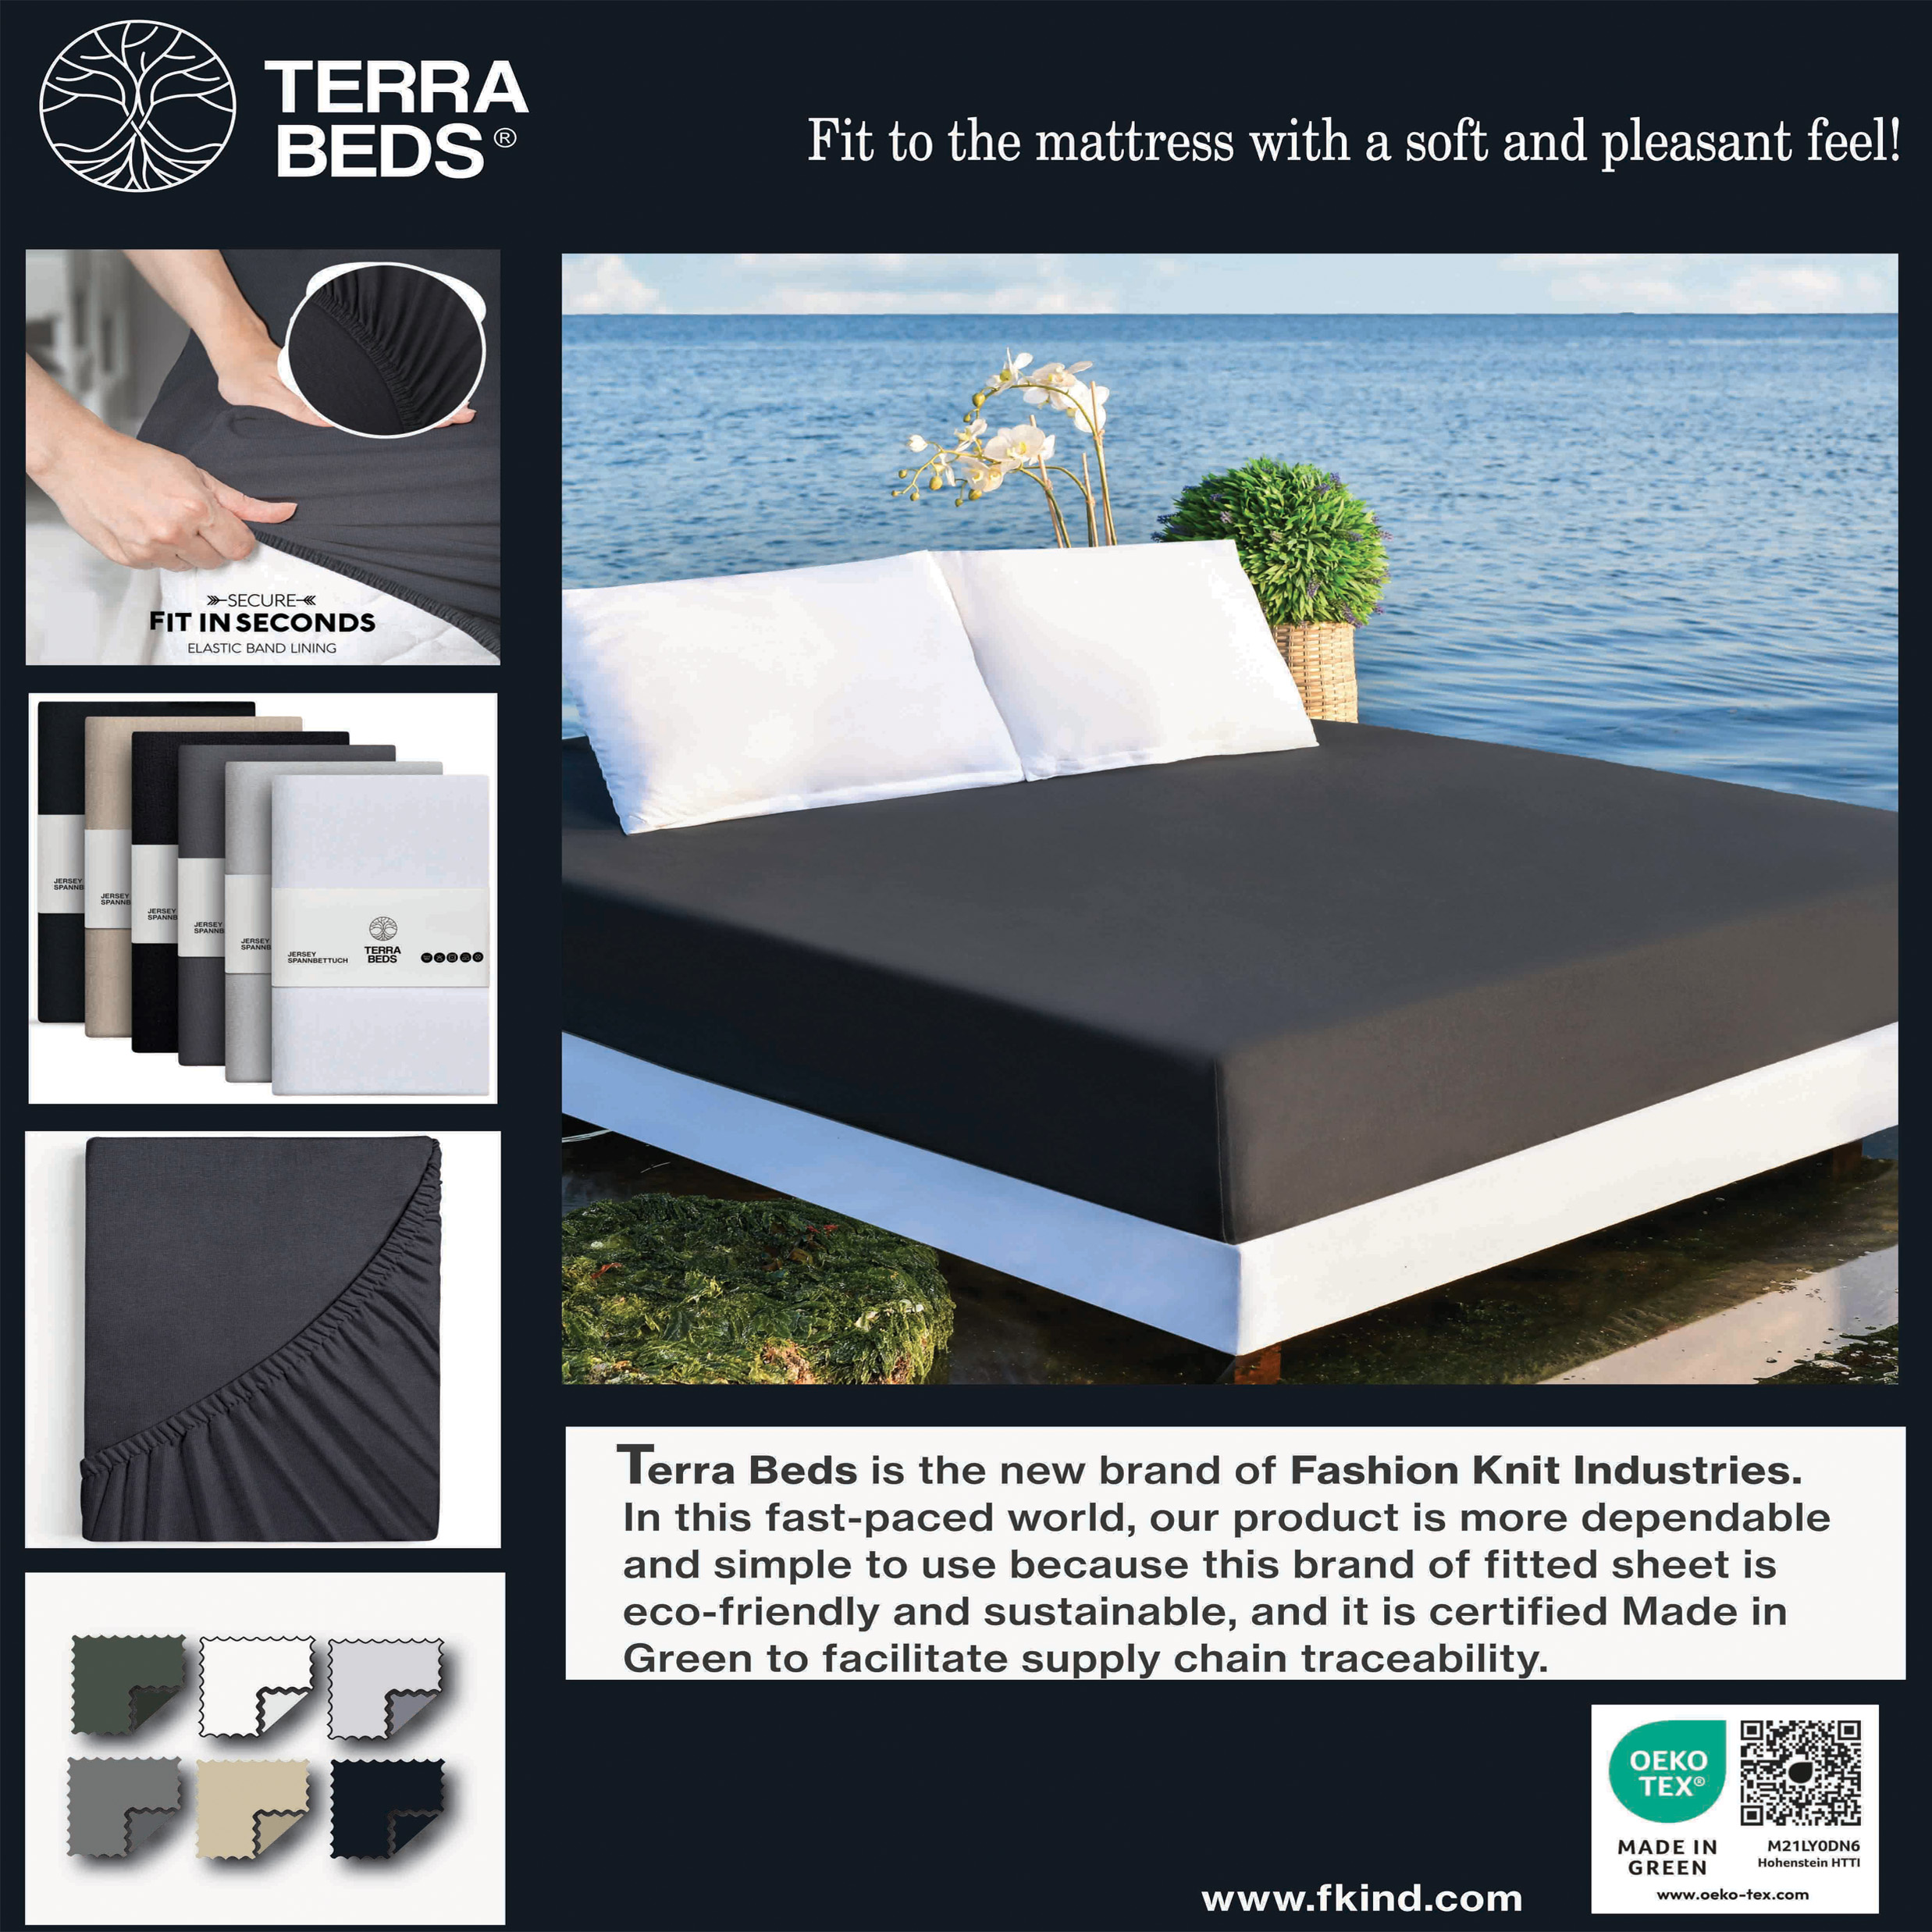 001 - terra beds 5-1-23